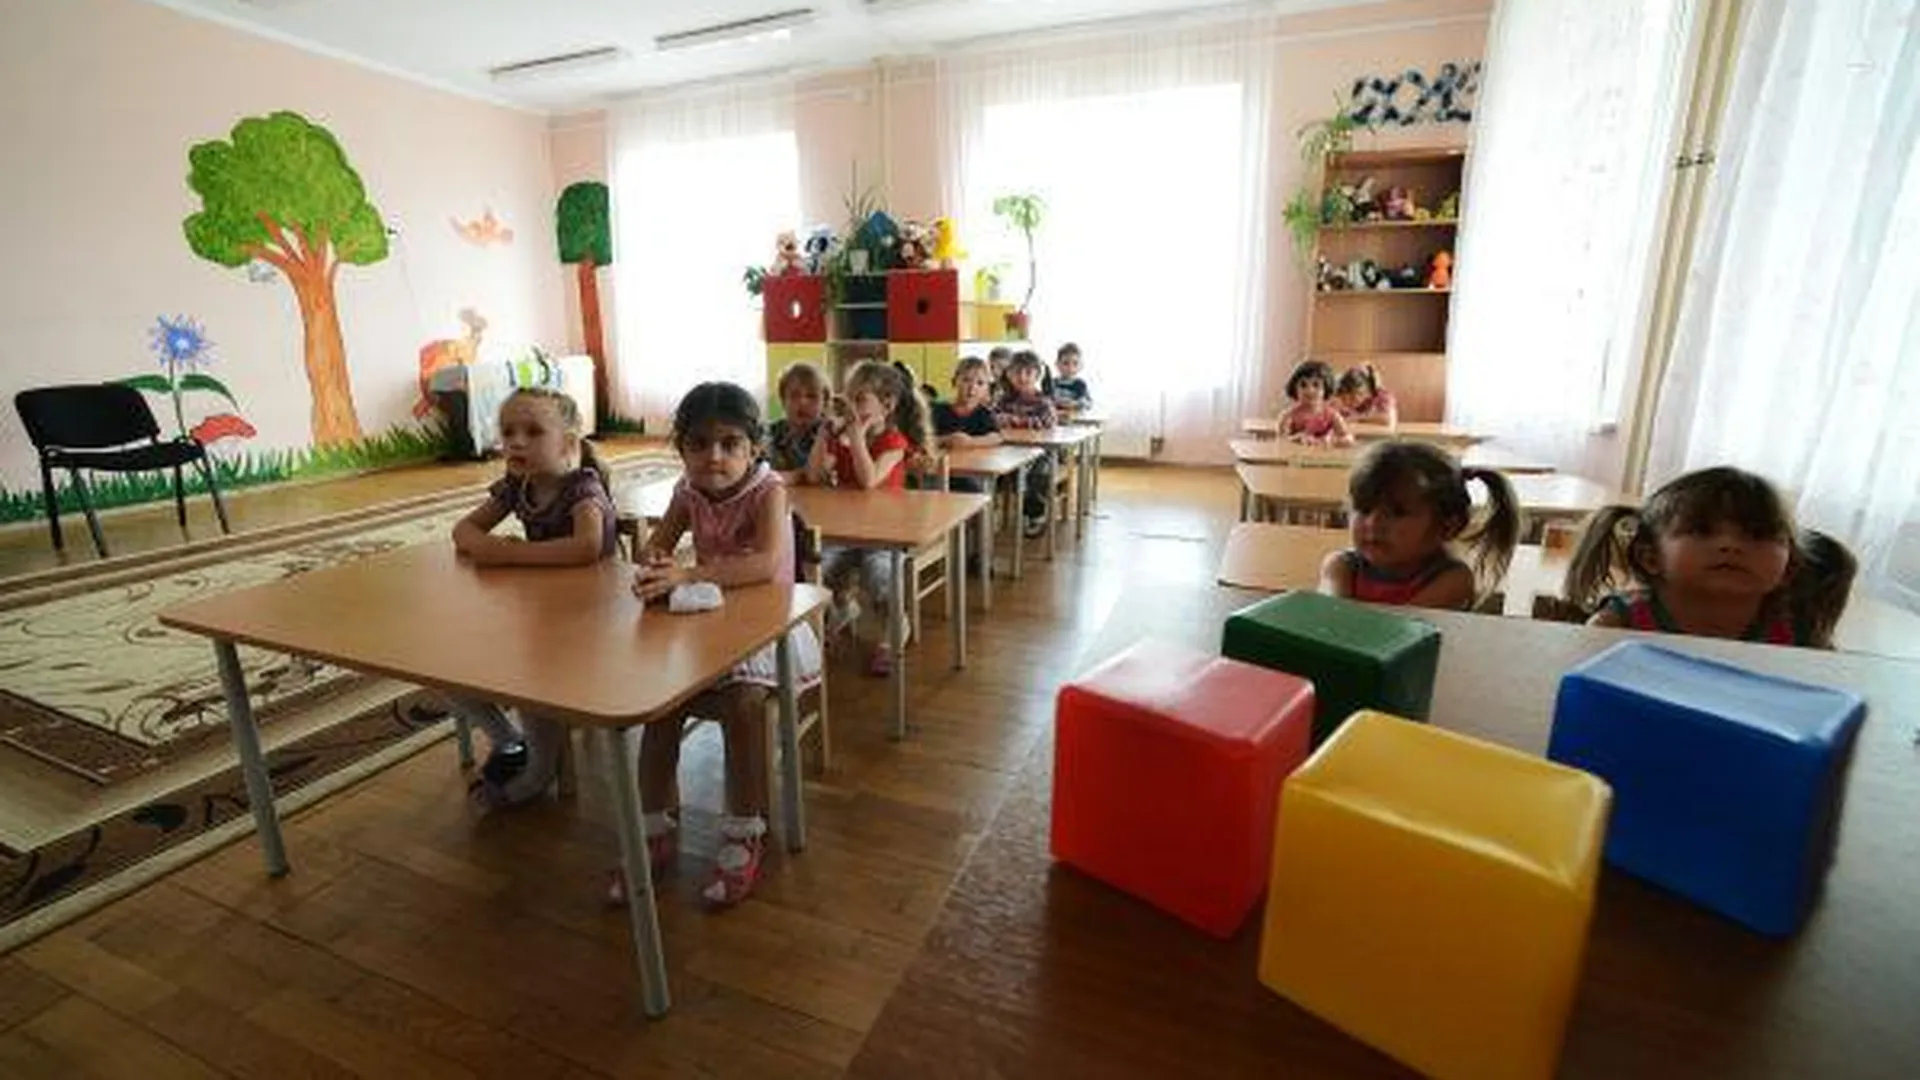 Более 900 мест создадут в детсадах Пушкинского района к 2018 году